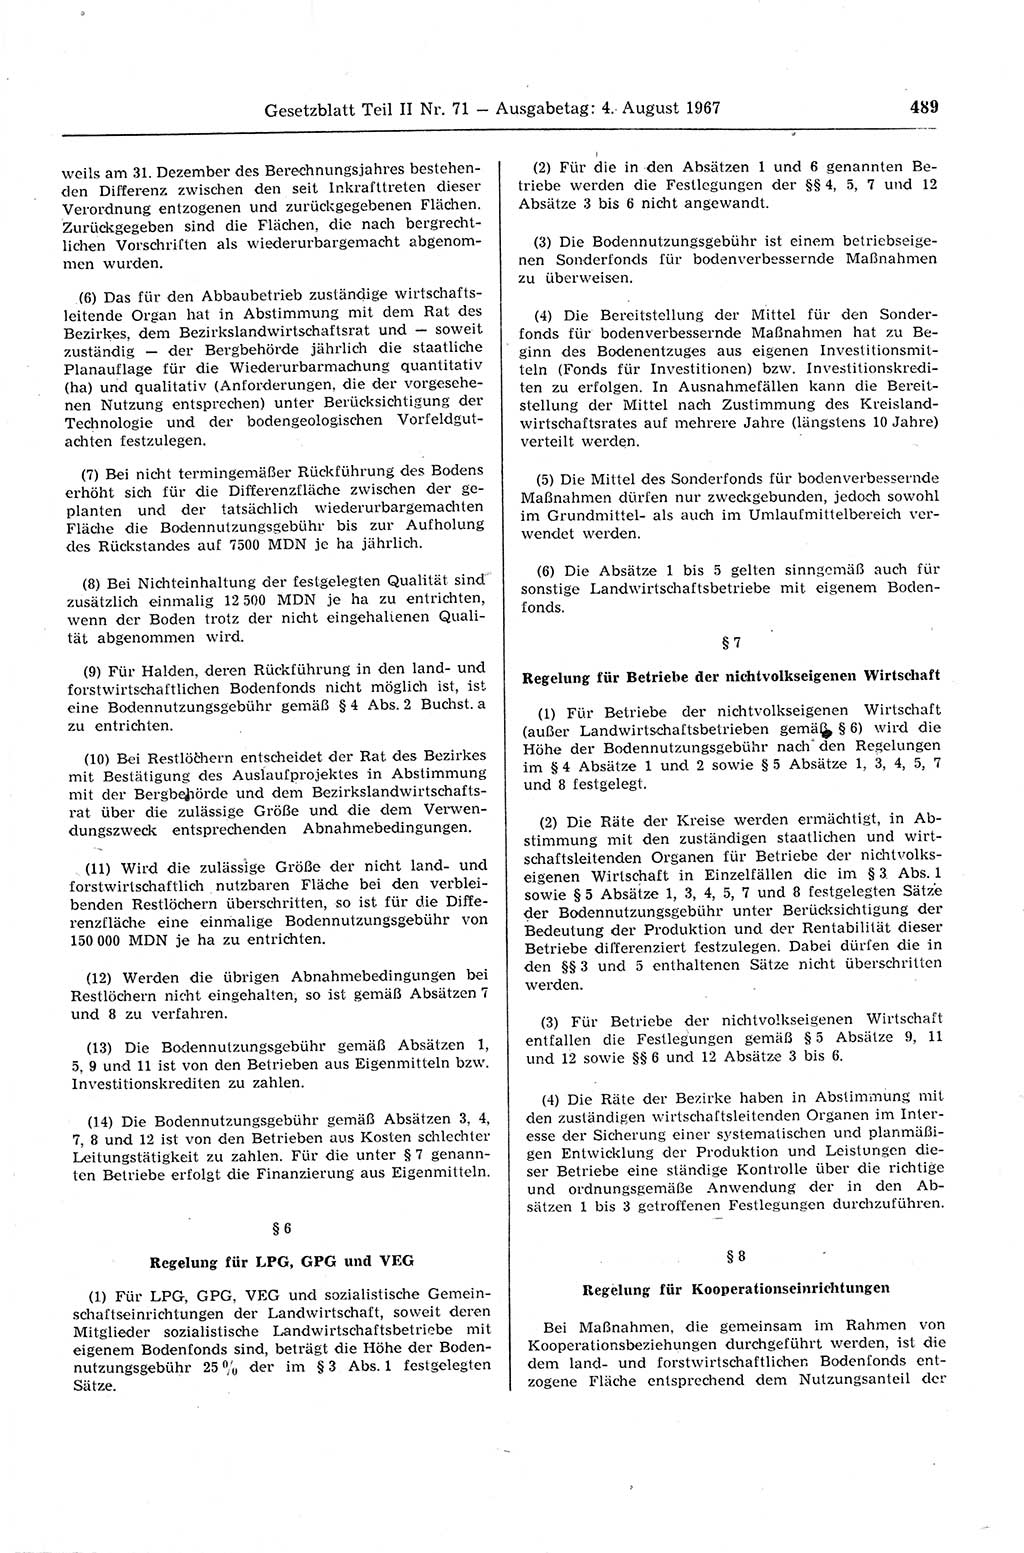 Gesetzblatt (GBl.) der Deutschen Demokratischen Republik (DDR) Teil ⅠⅠ 1967, Seite 489 (GBl. DDR ⅠⅠ 1967, S. 489)